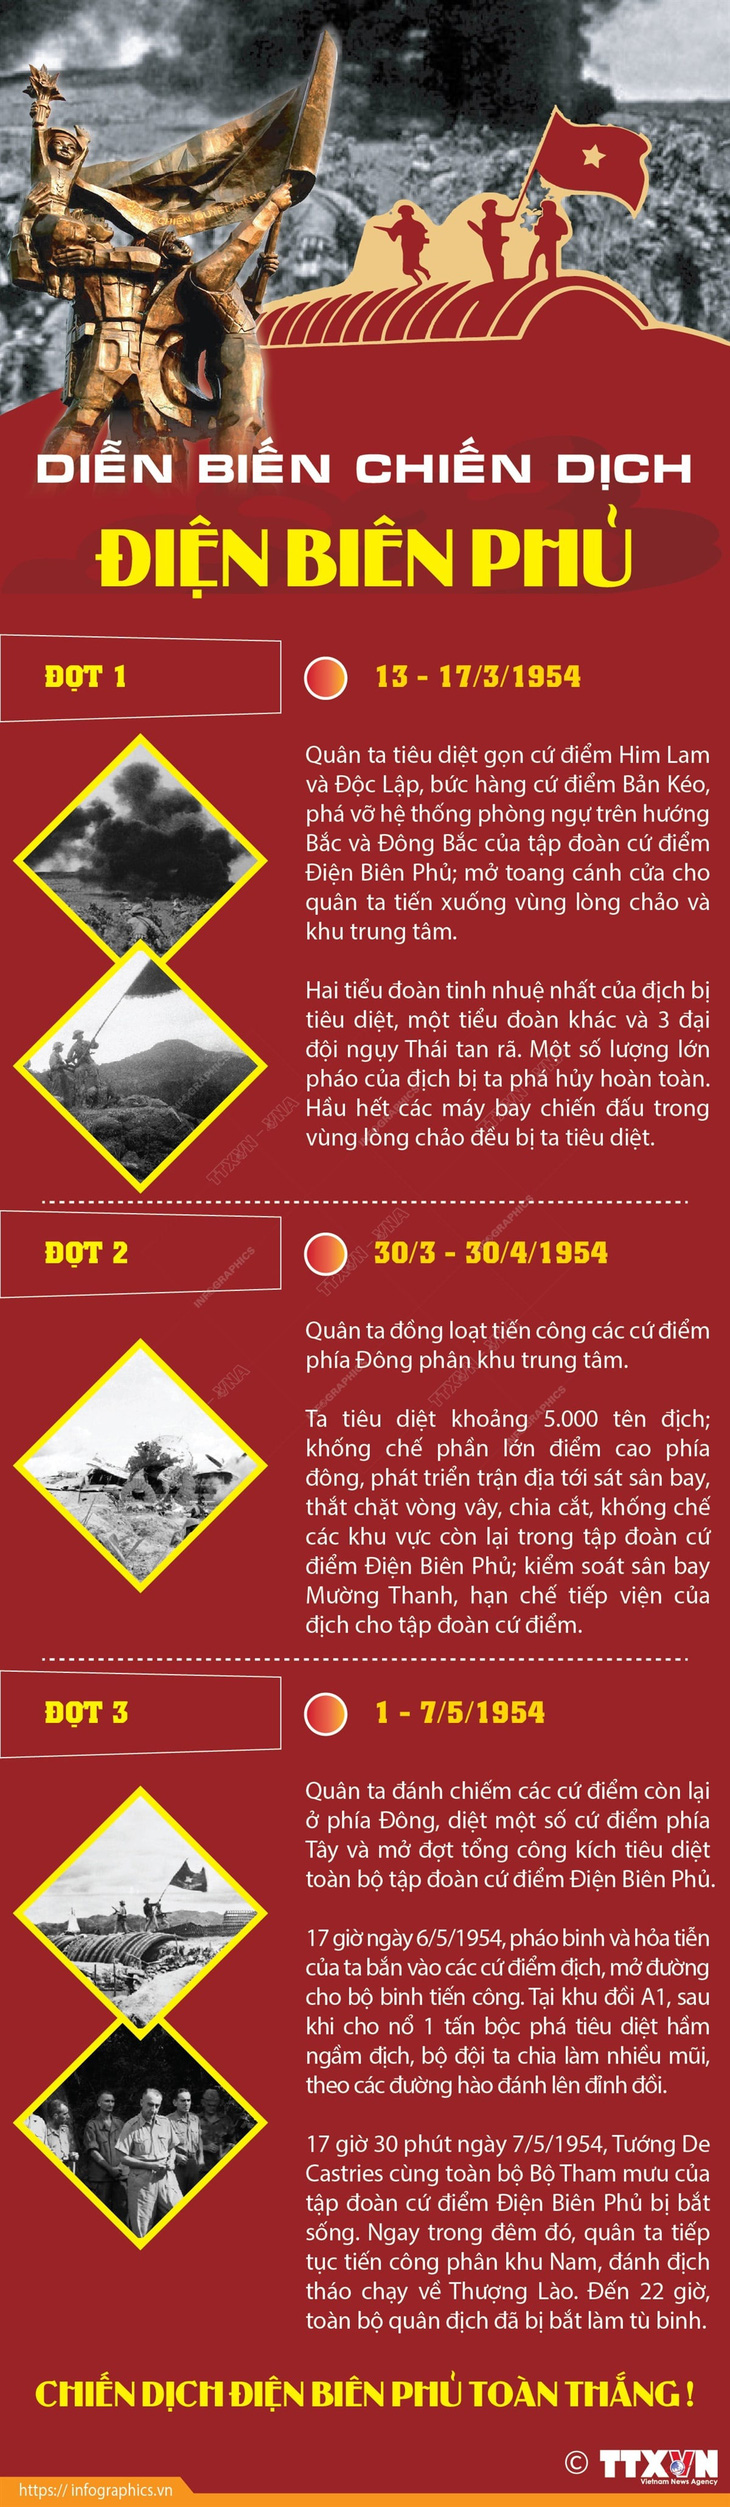 Diễn biến chiến dịch Điện Biên Phủ - Infographic: TTXVN